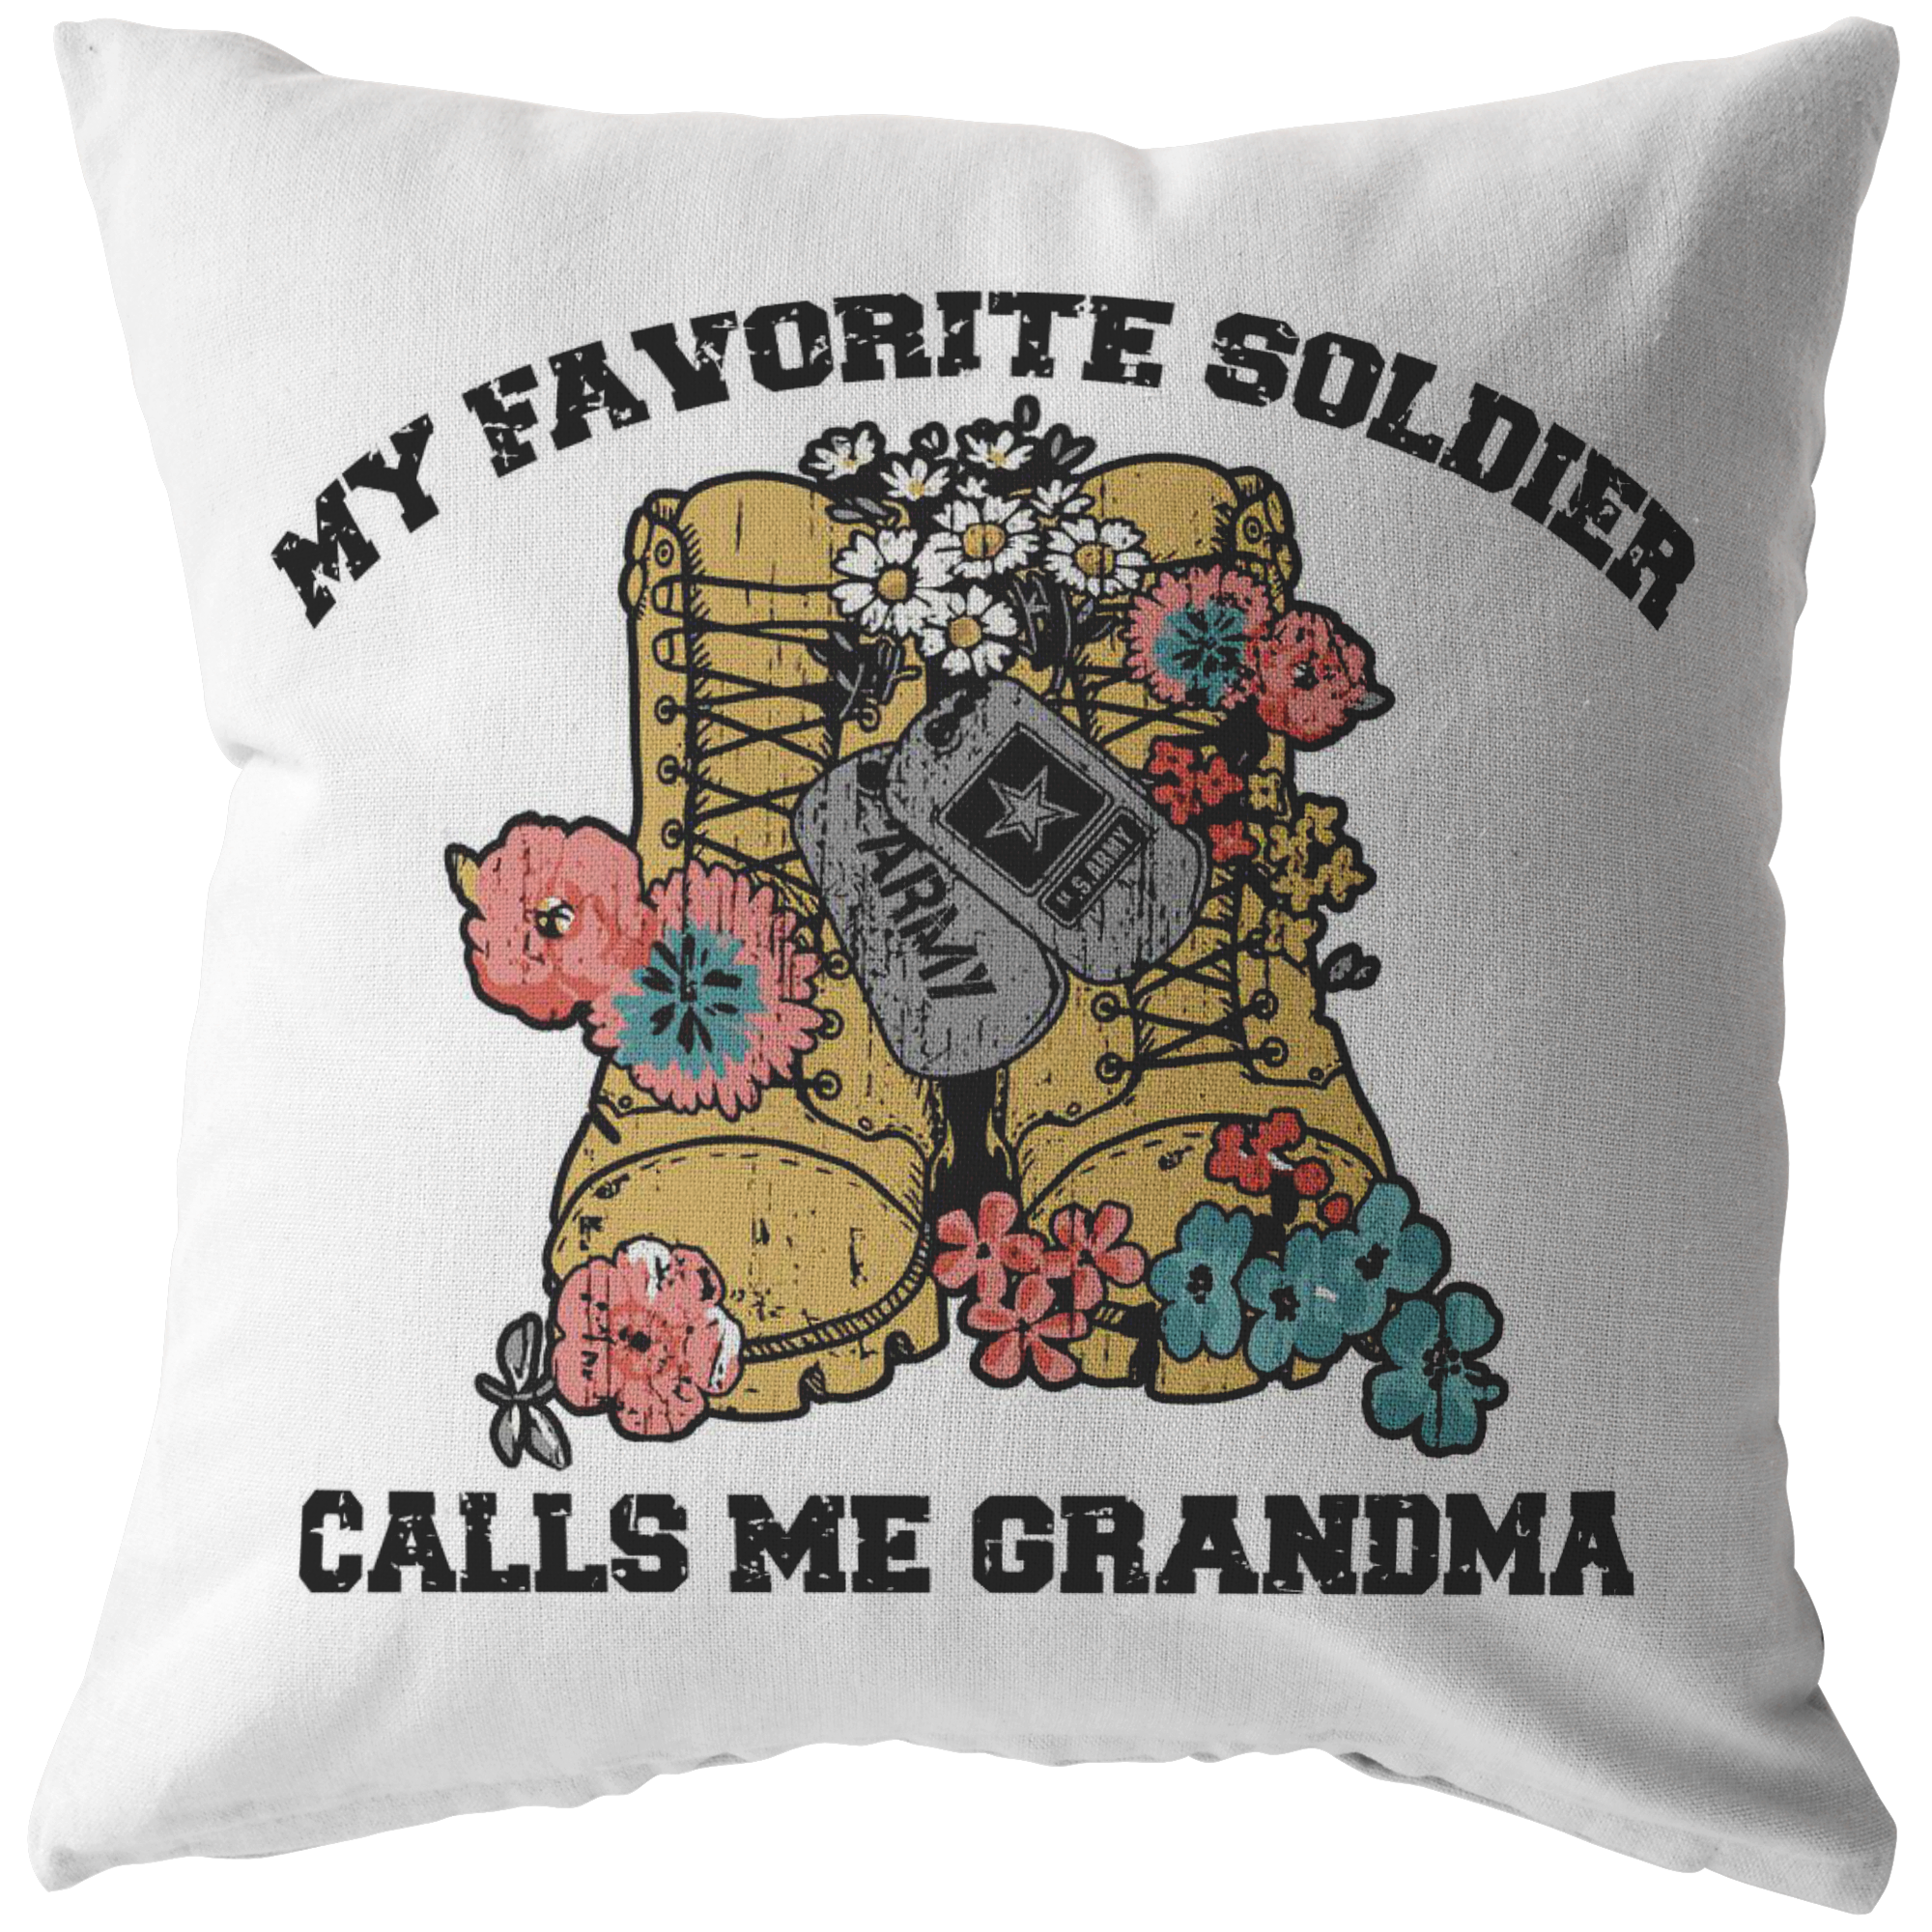 My Favorite Soldier Calls Me Grandma Pillowcase Army Grandma Pillow Case Military Grandma Gift